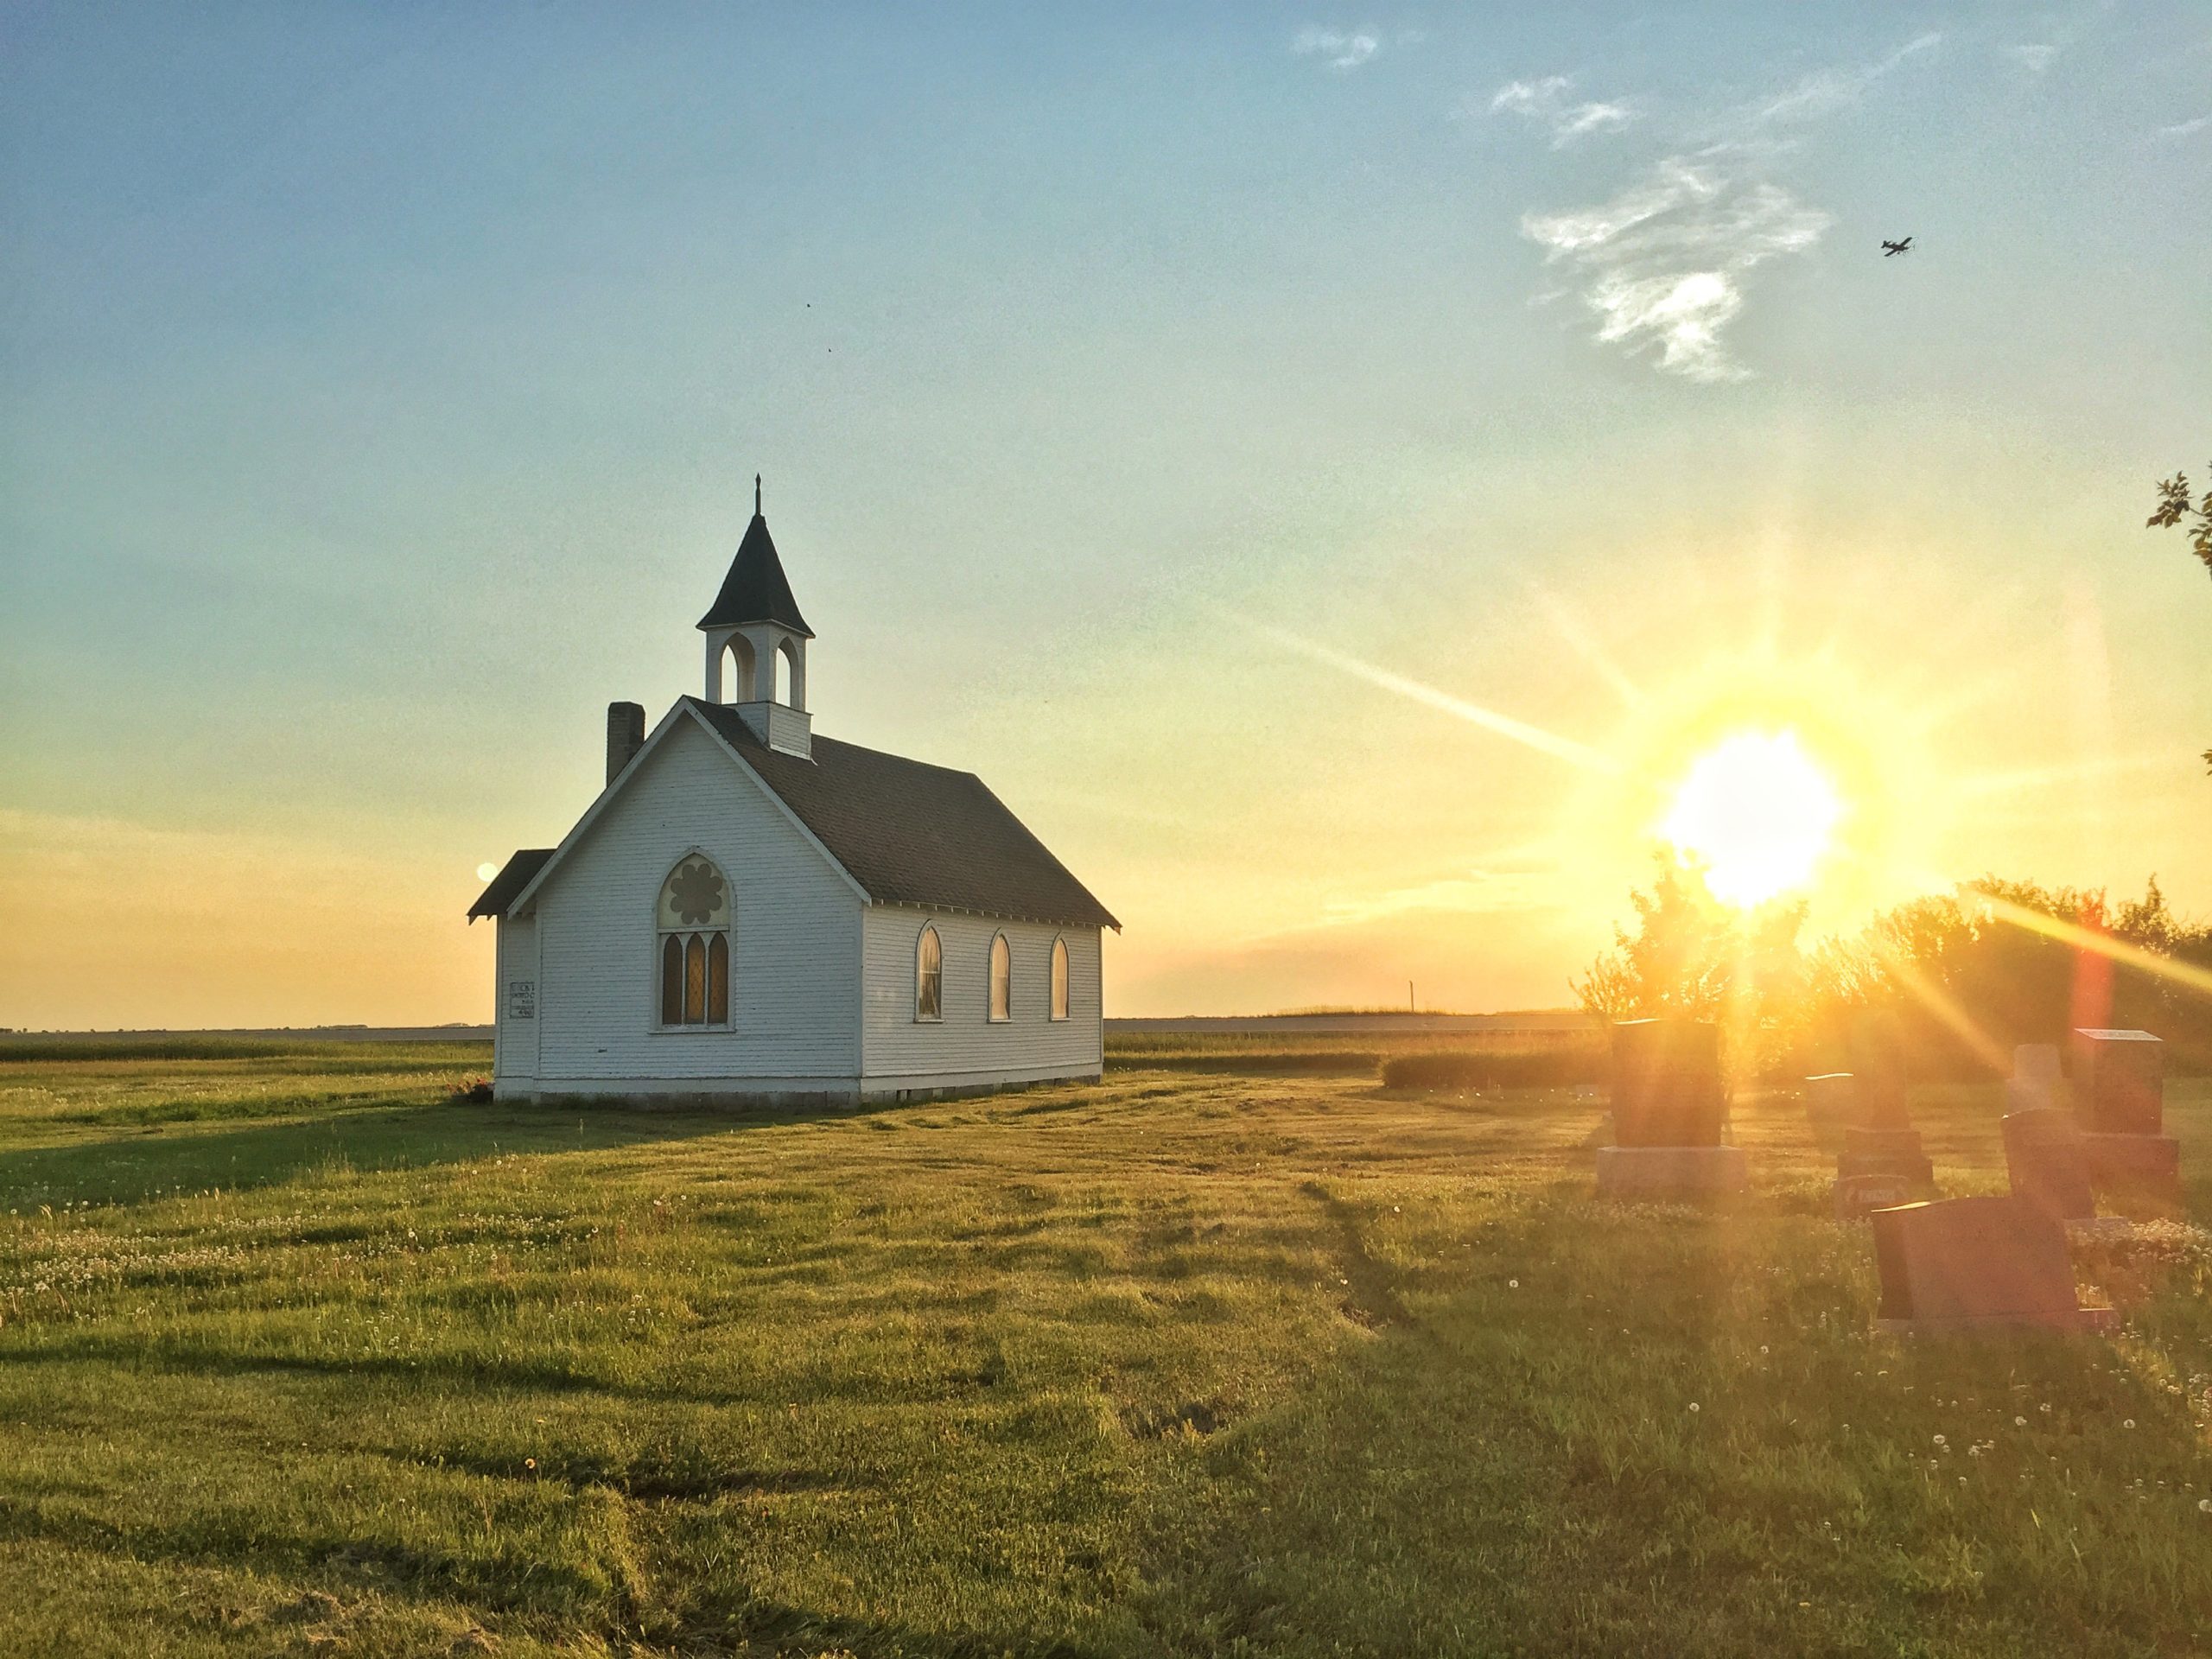 A little church on a prairie field as the sun rises over the horizon.